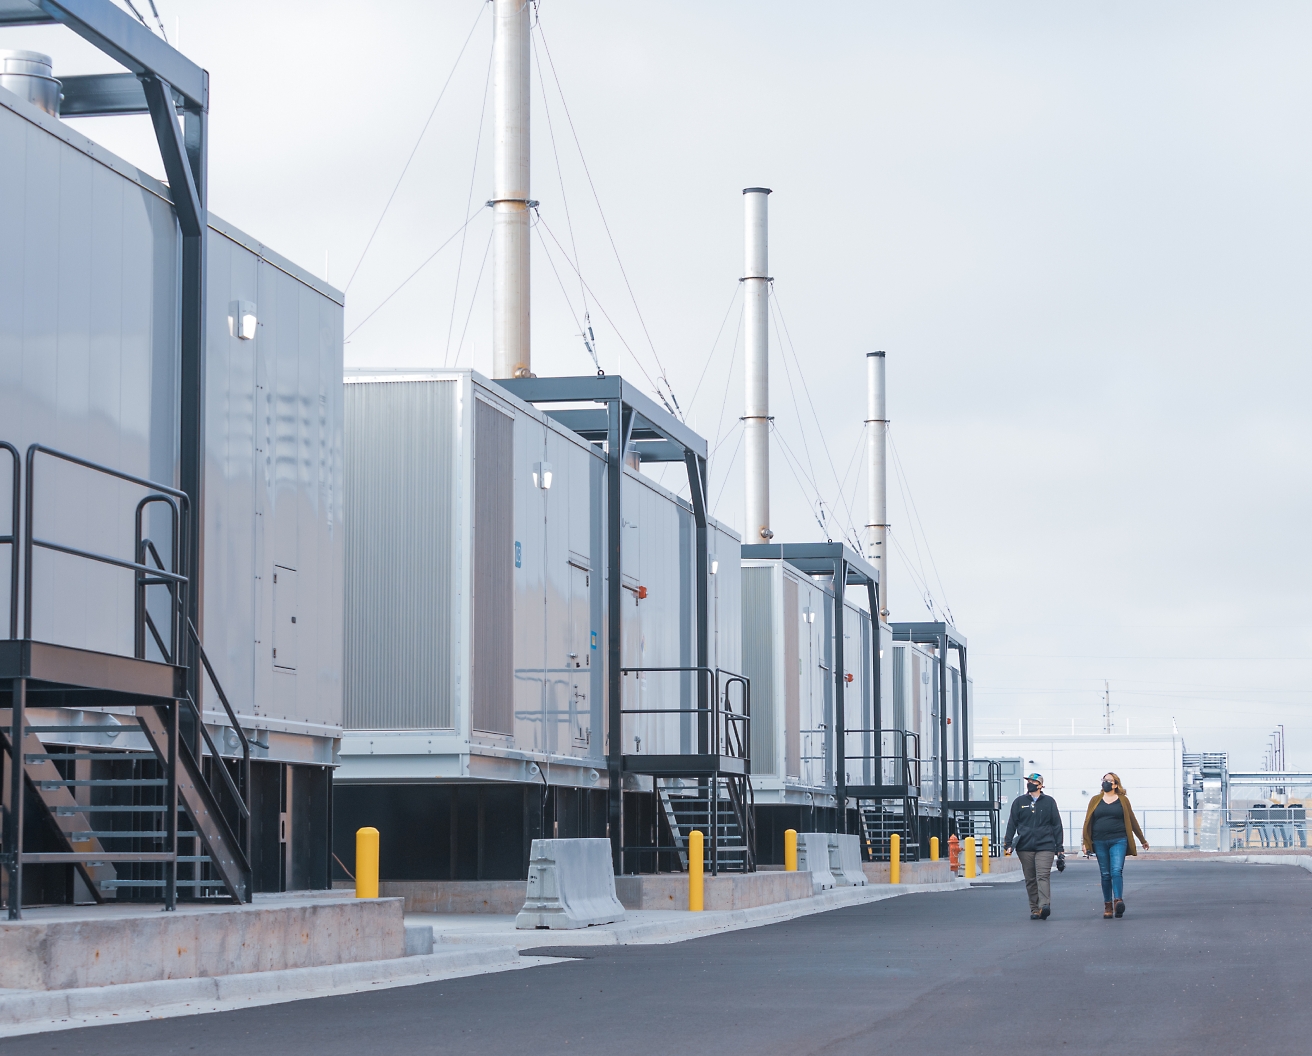 Bulutlu bir gökyüzü altında, bir tesiste uzun bacaları olan bir dizi endüstriyel konteynerin yanında yürüyen iki kişi.